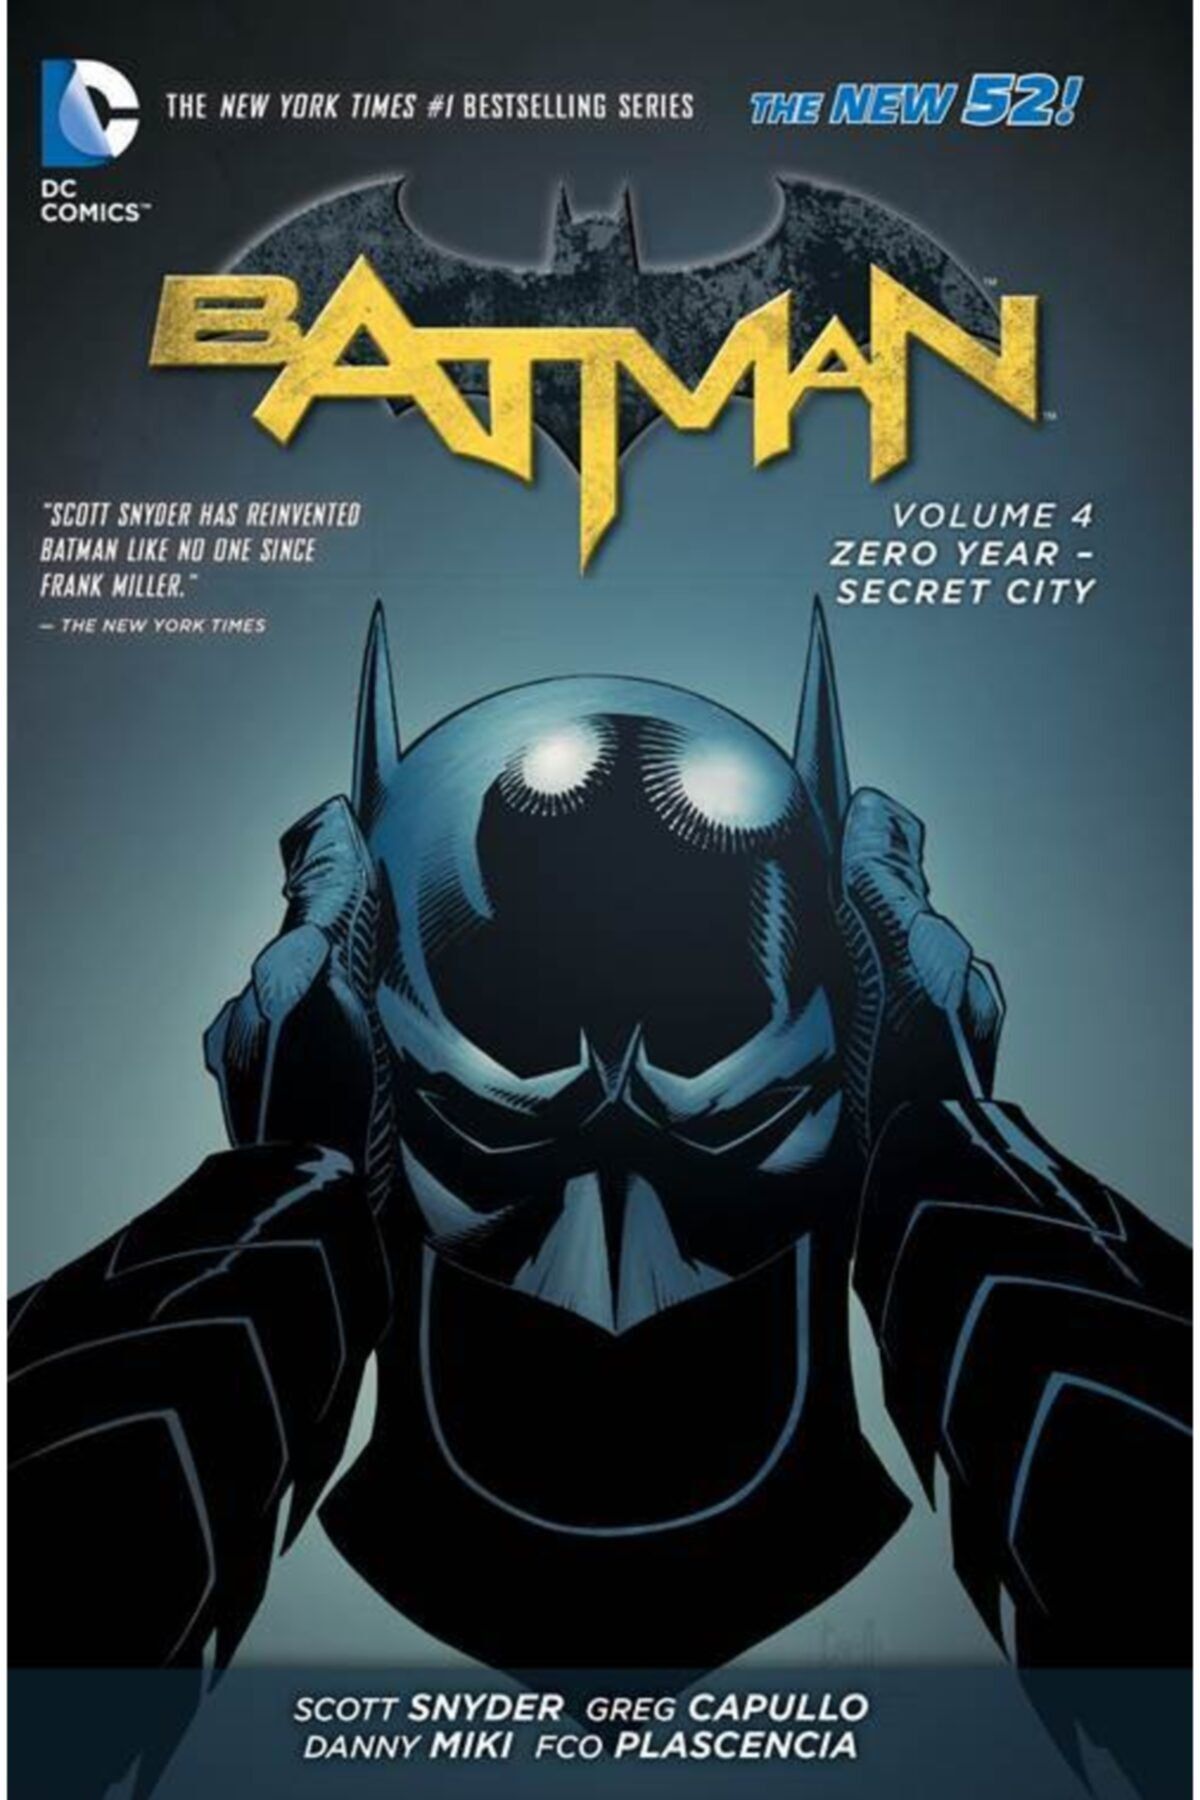 TM & DC Comics-Warner Bros Batman Vol. 4: Zero Year-secret City (the New 52)